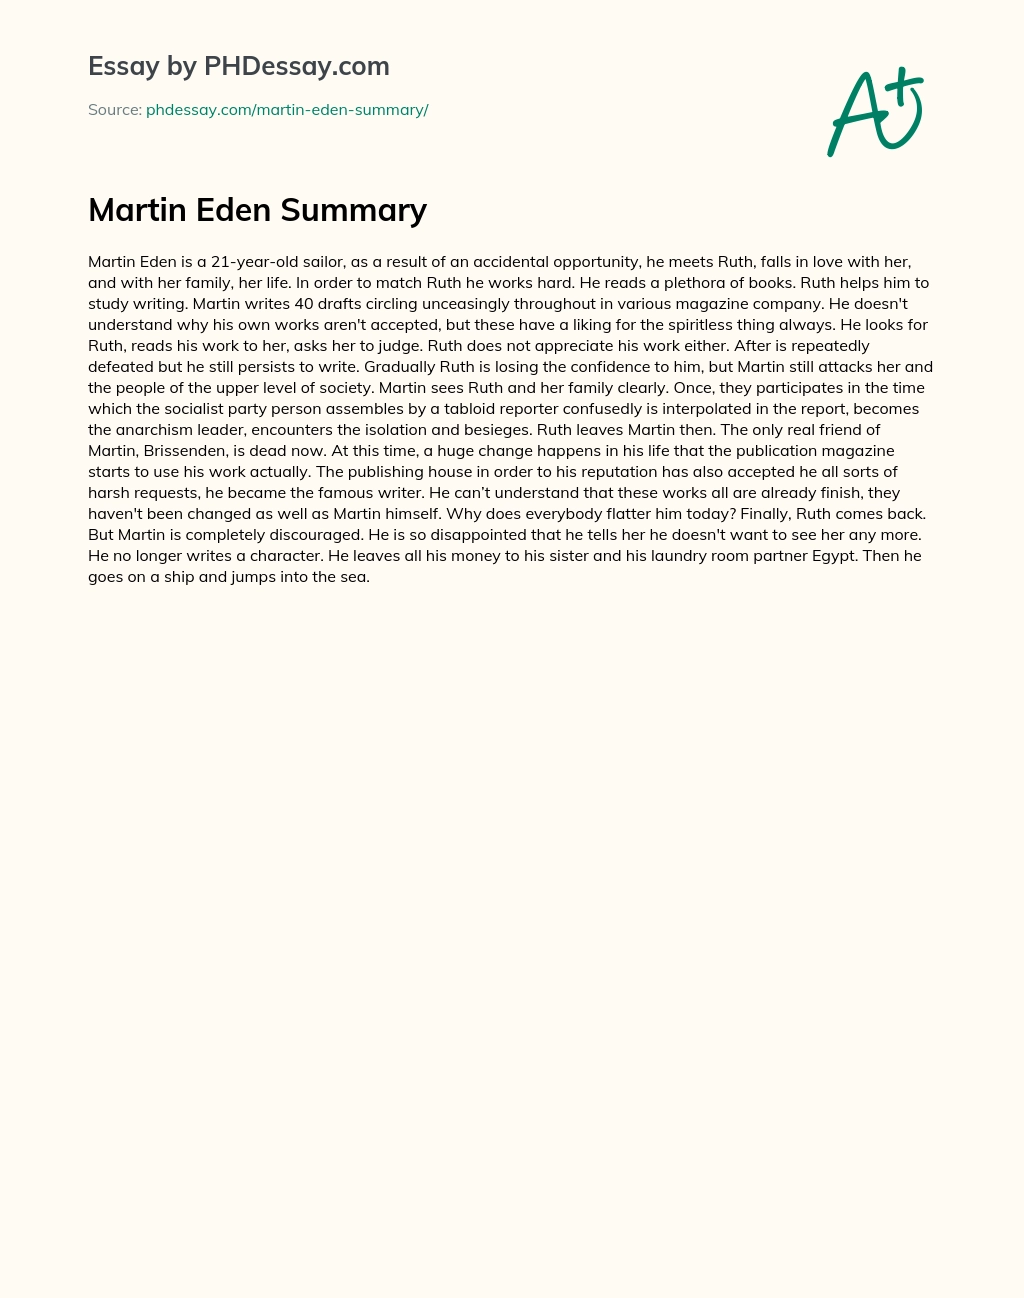 Martin Eden Summary essay